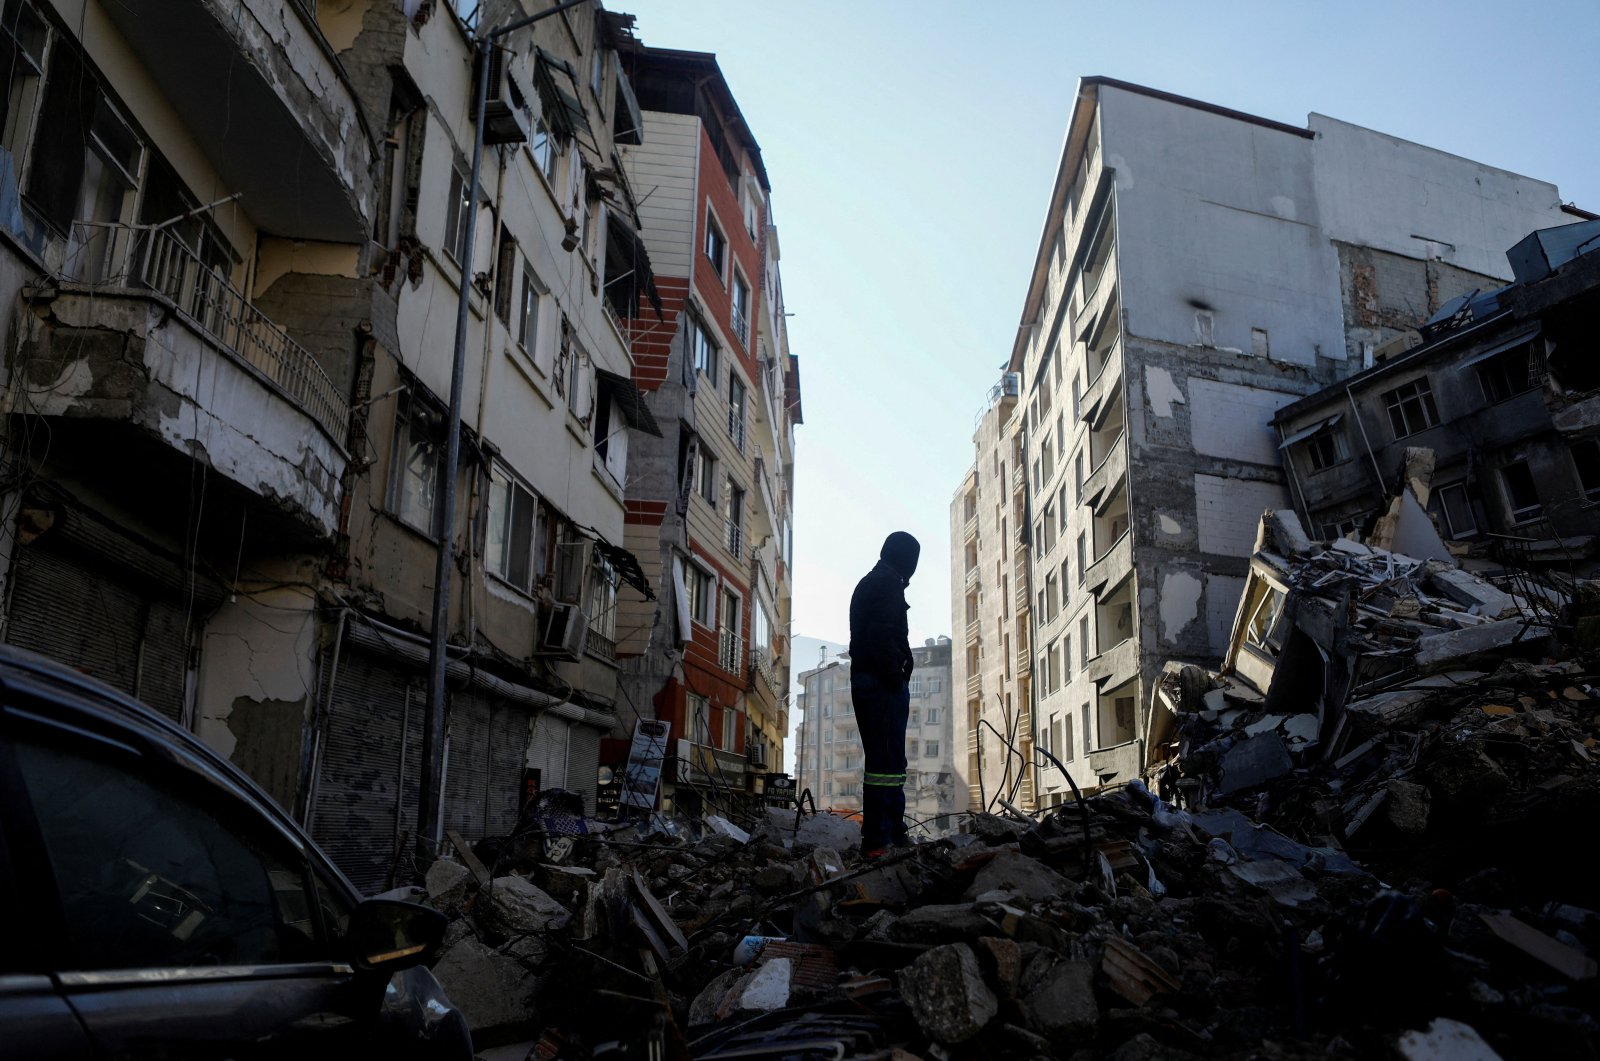 Korban tewas akibat gempa mematikan Türkiye mencapai 39.672: Soylu